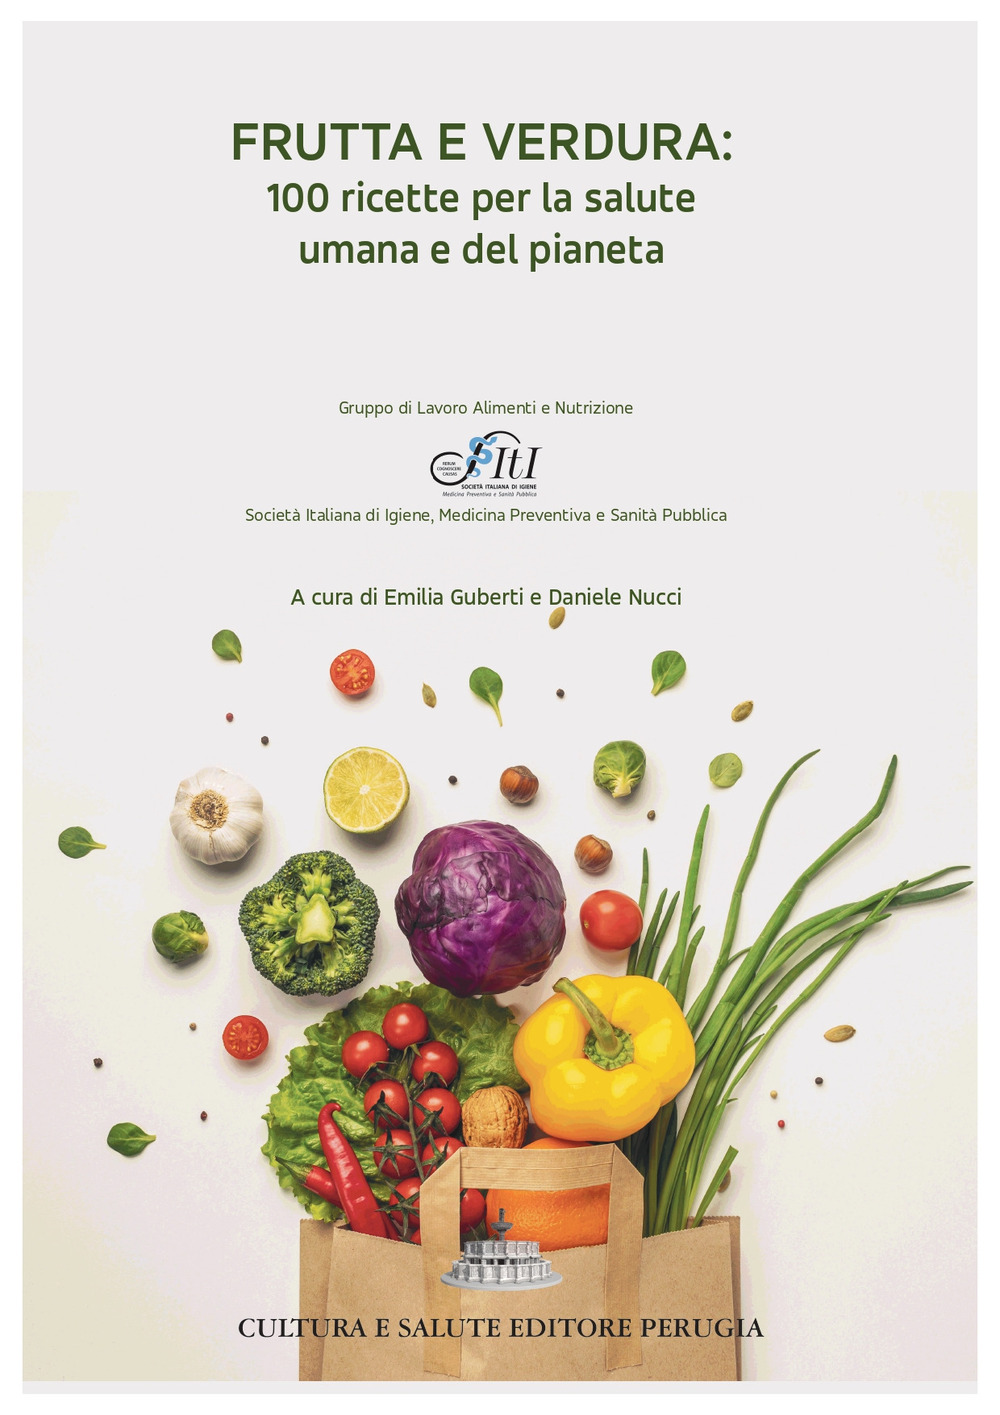 Frutta e verdura: 100 ricette per la salute umana e del pianeta